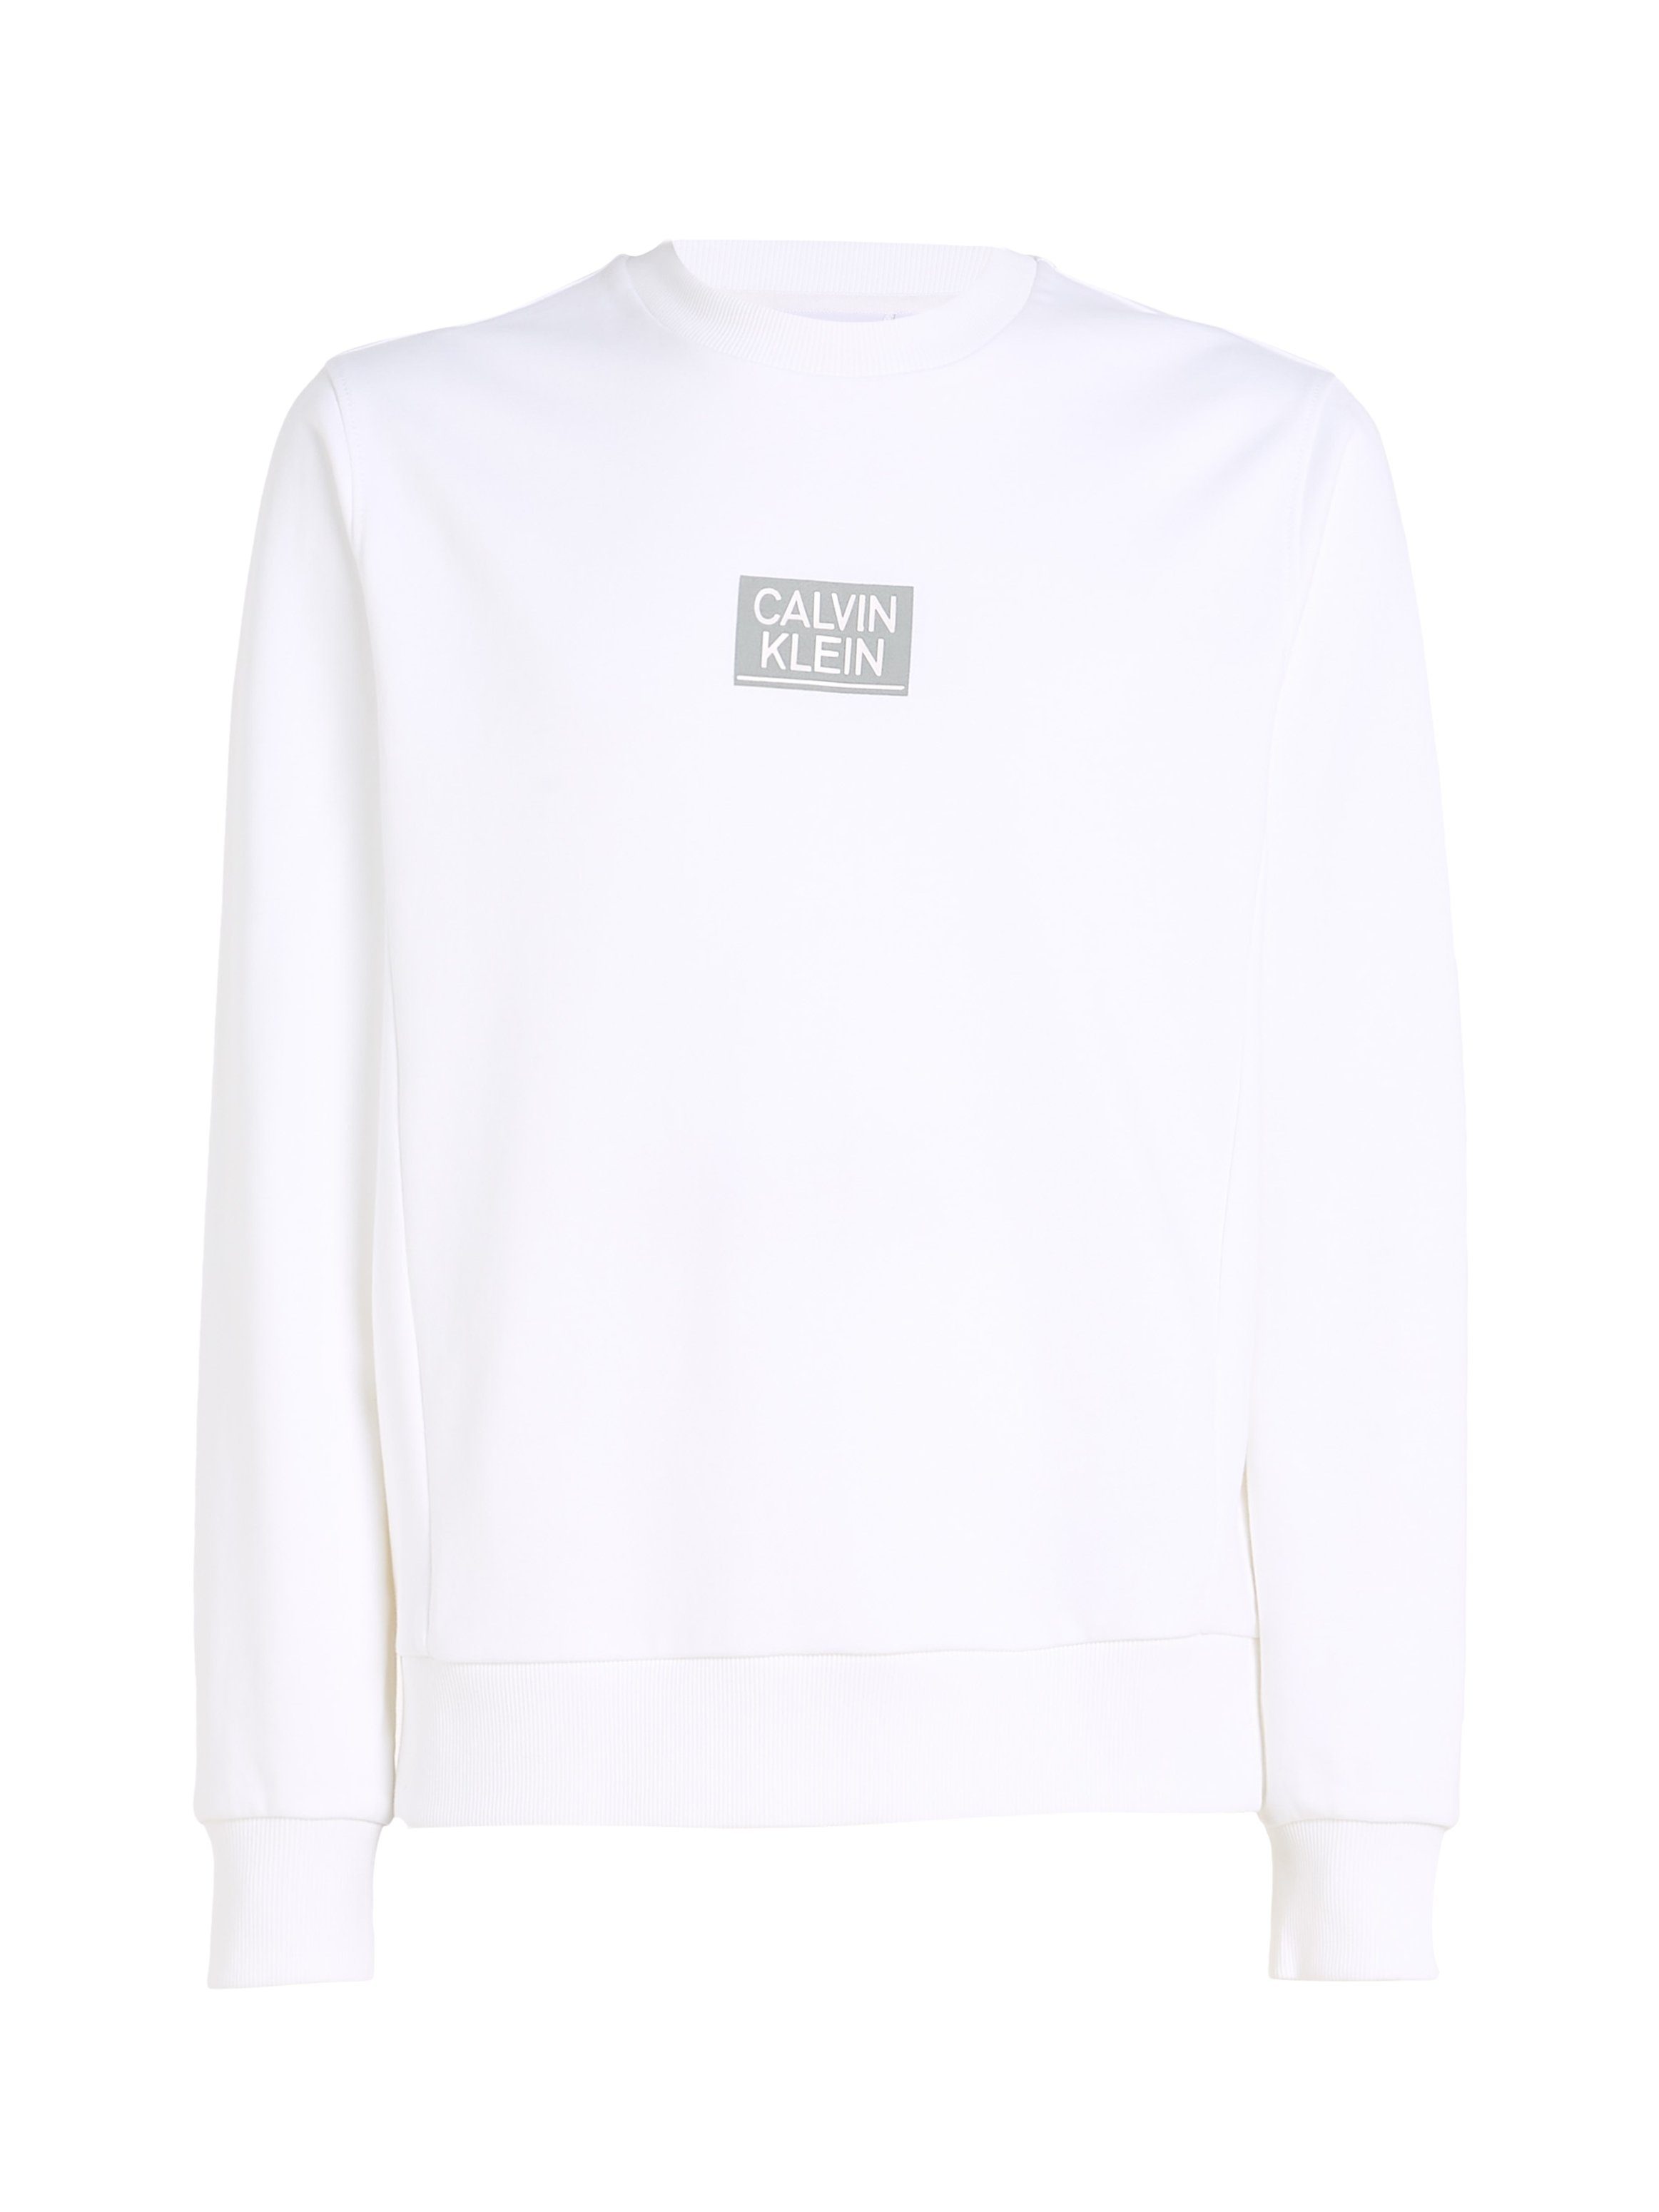 Calvin Klein SWEATSHIRT LOGO STENCIL Sweatshirt GLOSS White Bright